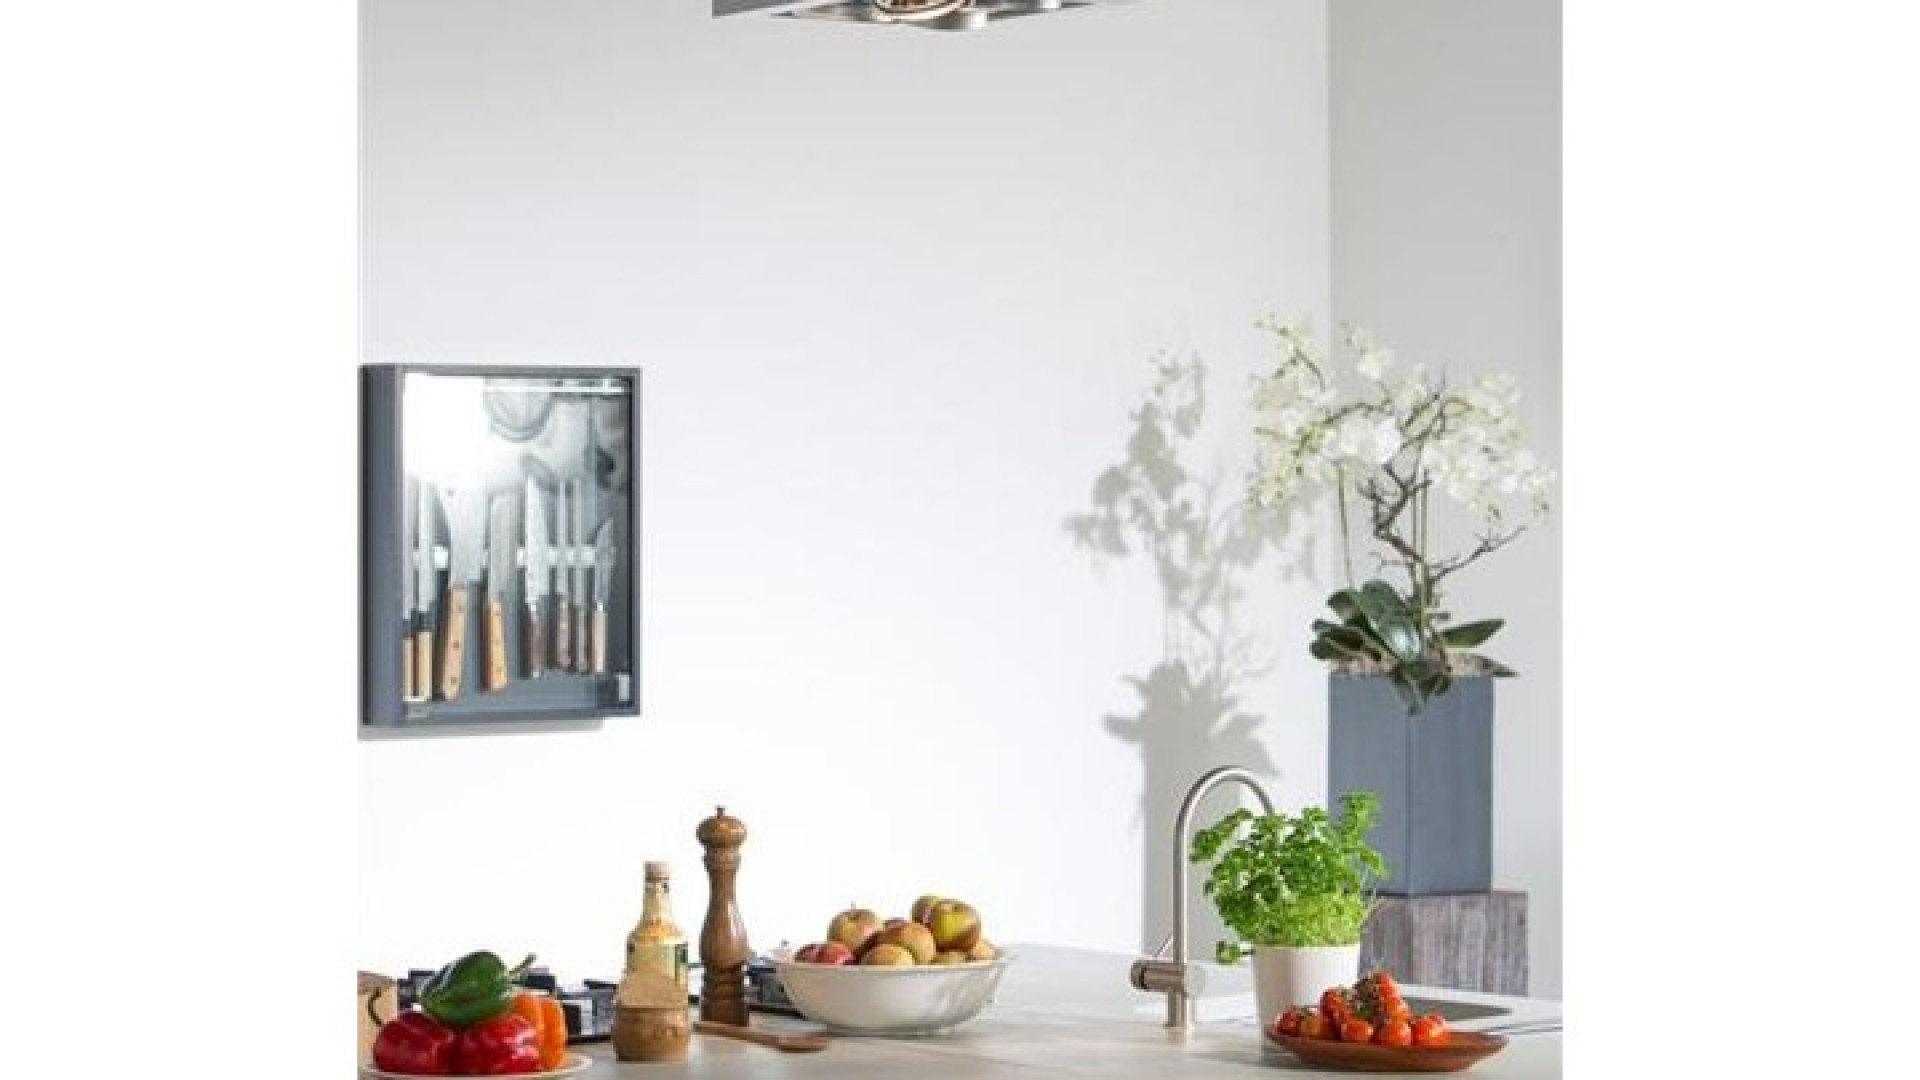 Tv kok Rudolph van Veen verkoopt zijn huis inclusief topkeuken. Zie foto's